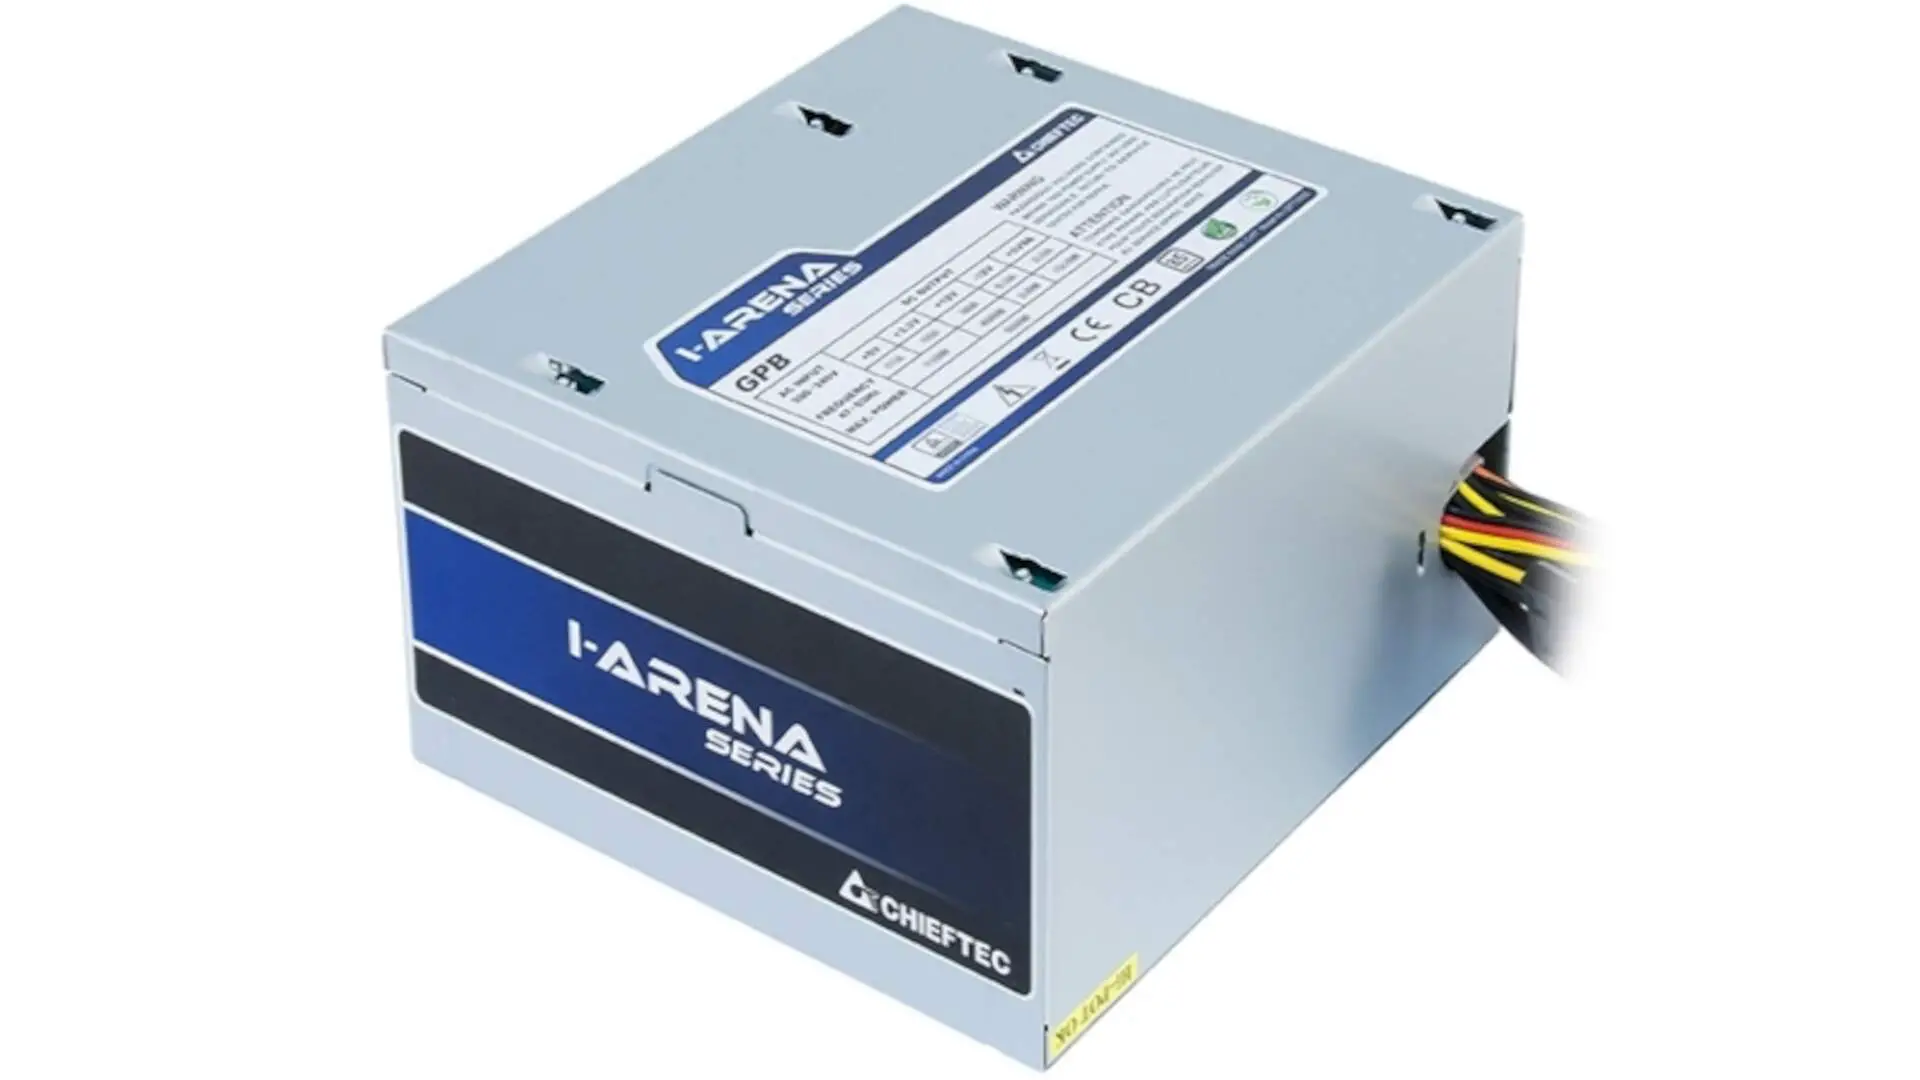 Chieftec iARENA GPB 400S Power Supply 2